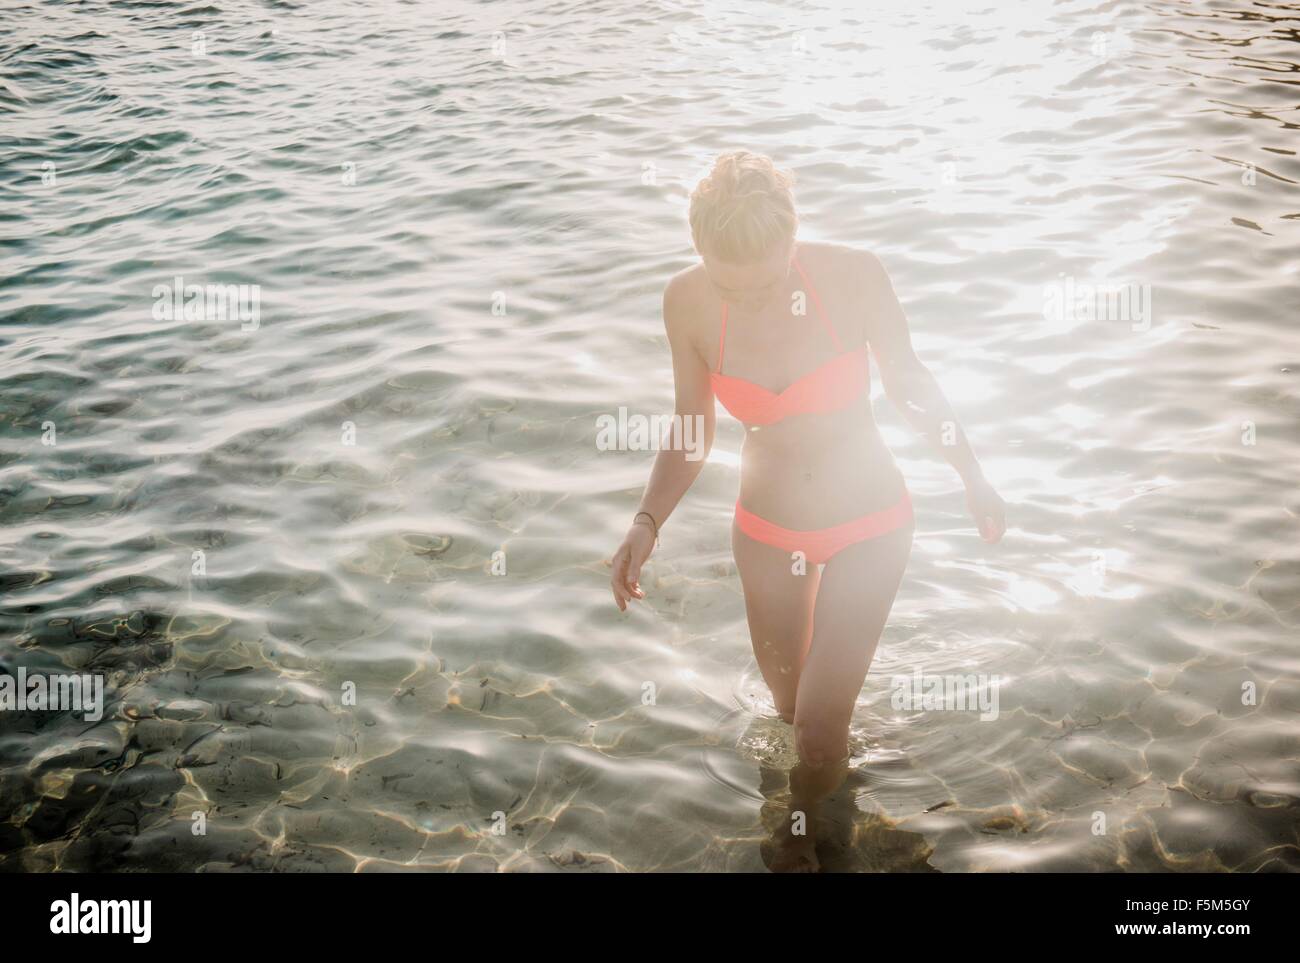 Mid adult woman wearing bikini paddling in sunlit sea Stock Photo